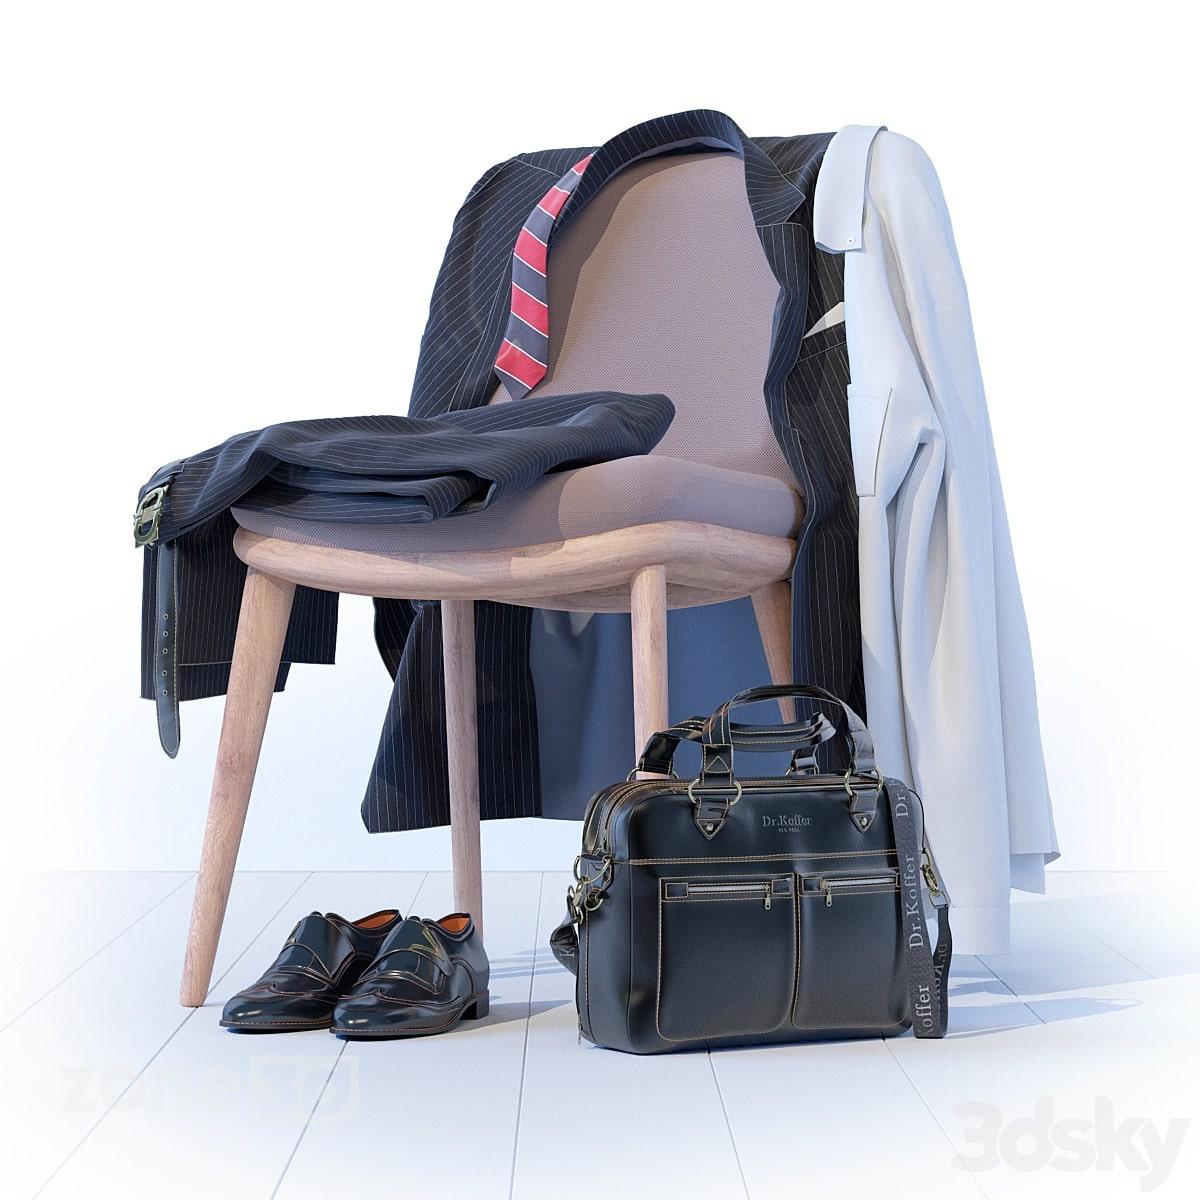 آبجکت ست لباس مردانه رسمی مدرن به همراه کفش و صندلی با کیف چرمی مدل Dr.Koffer